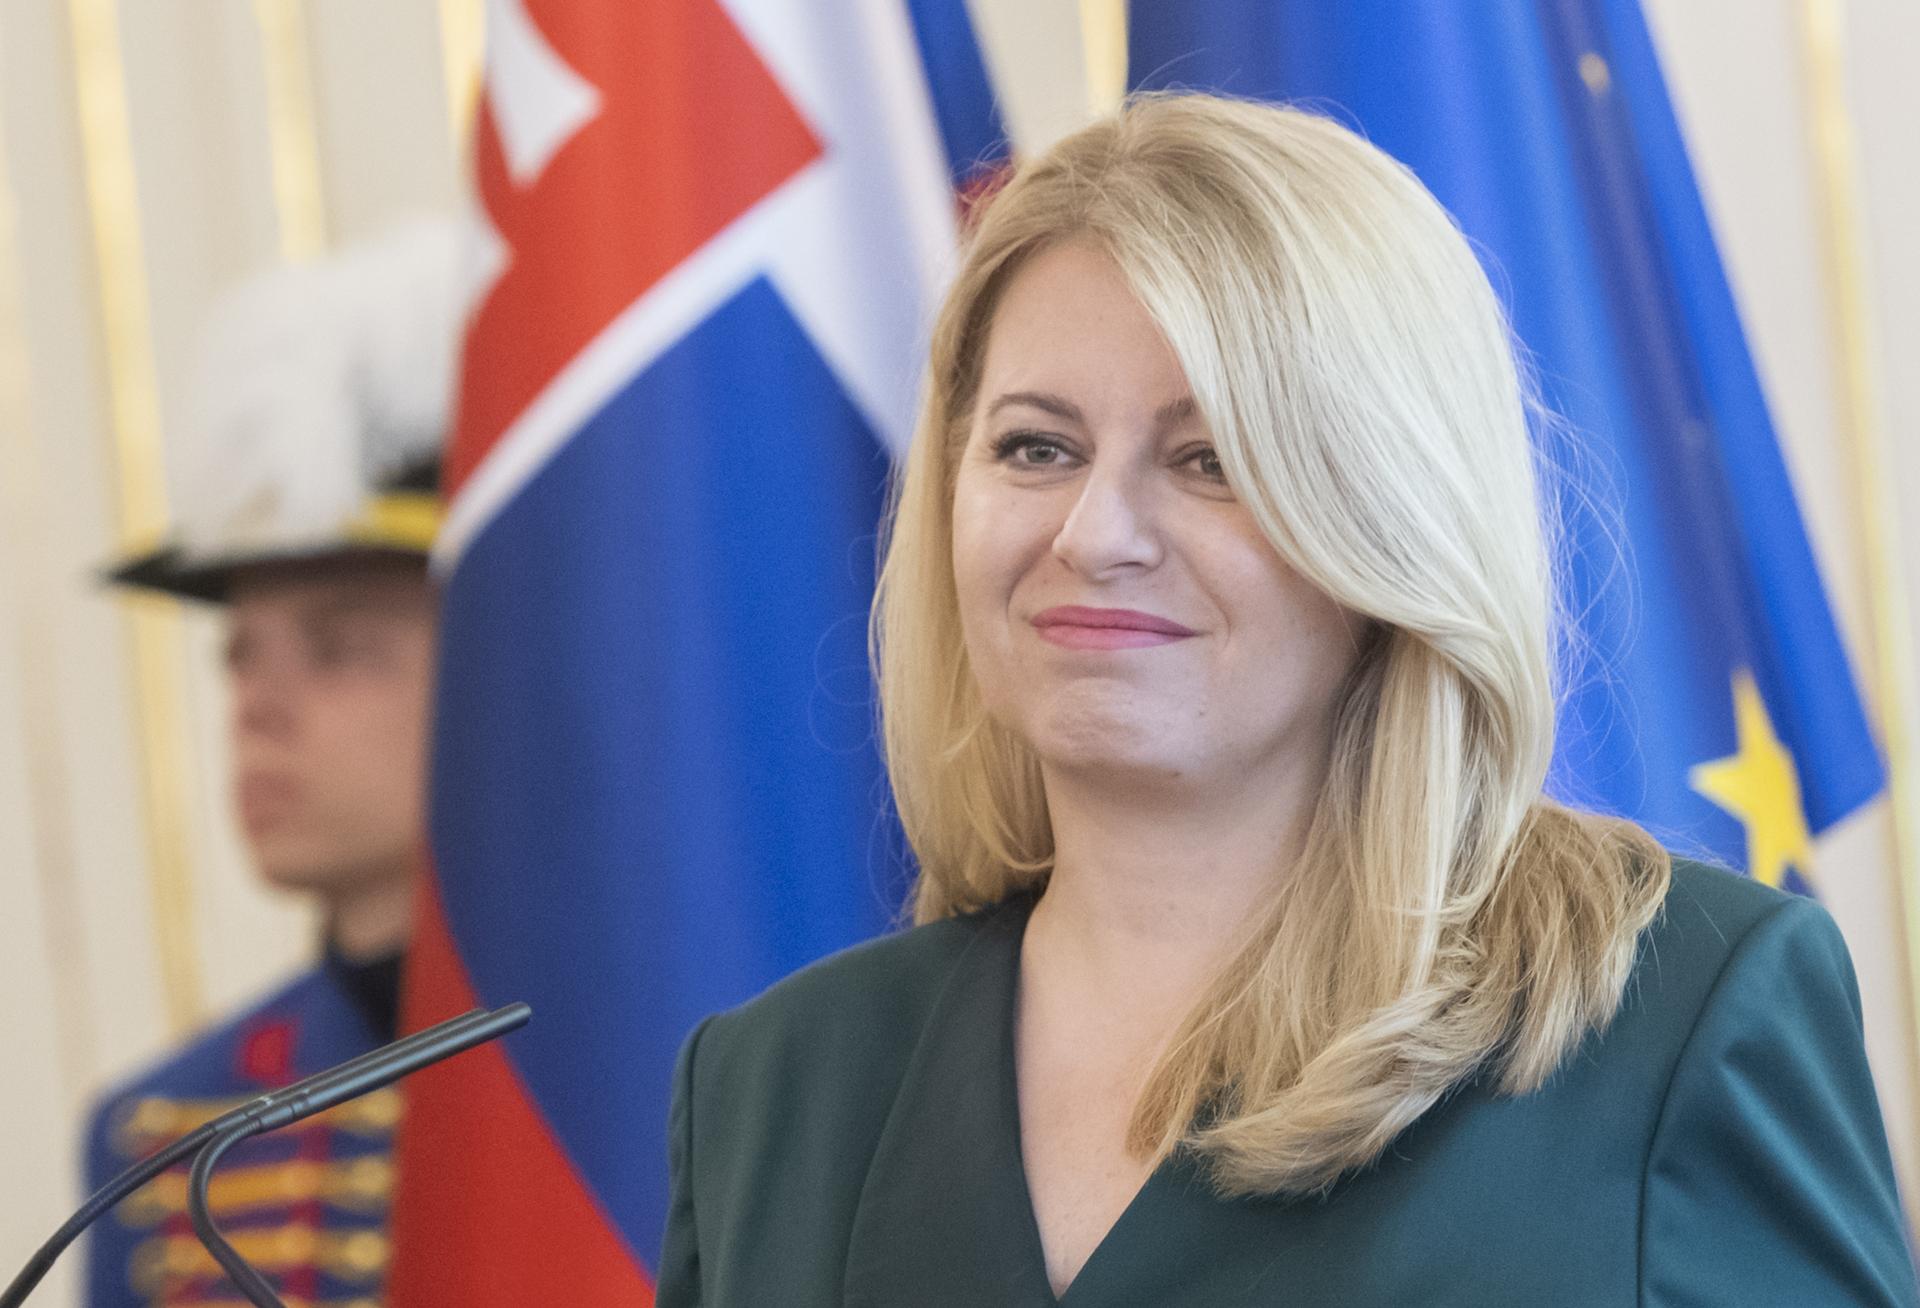 Pokračovanie slovenskej podpory Ukrajine je v ohrození, varovala Čaputová. Slovensko čelí ruskej propagande